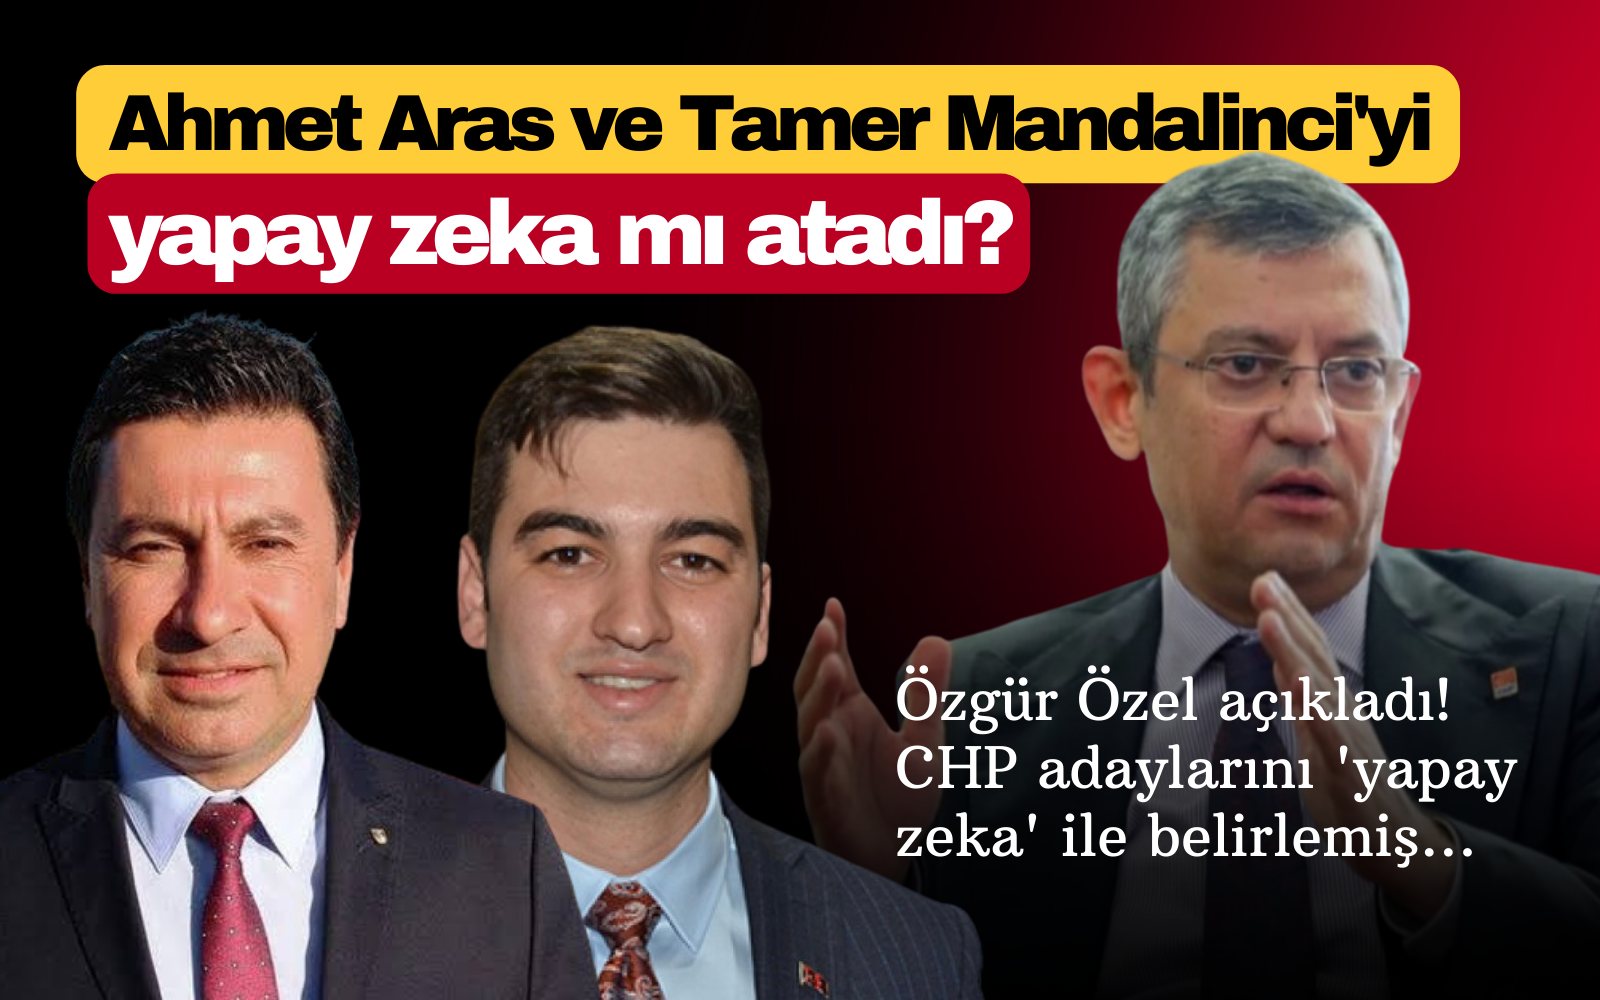 Ahmet Aras ve Tamer Mandalinci'yi yapay zeka mı atadı?